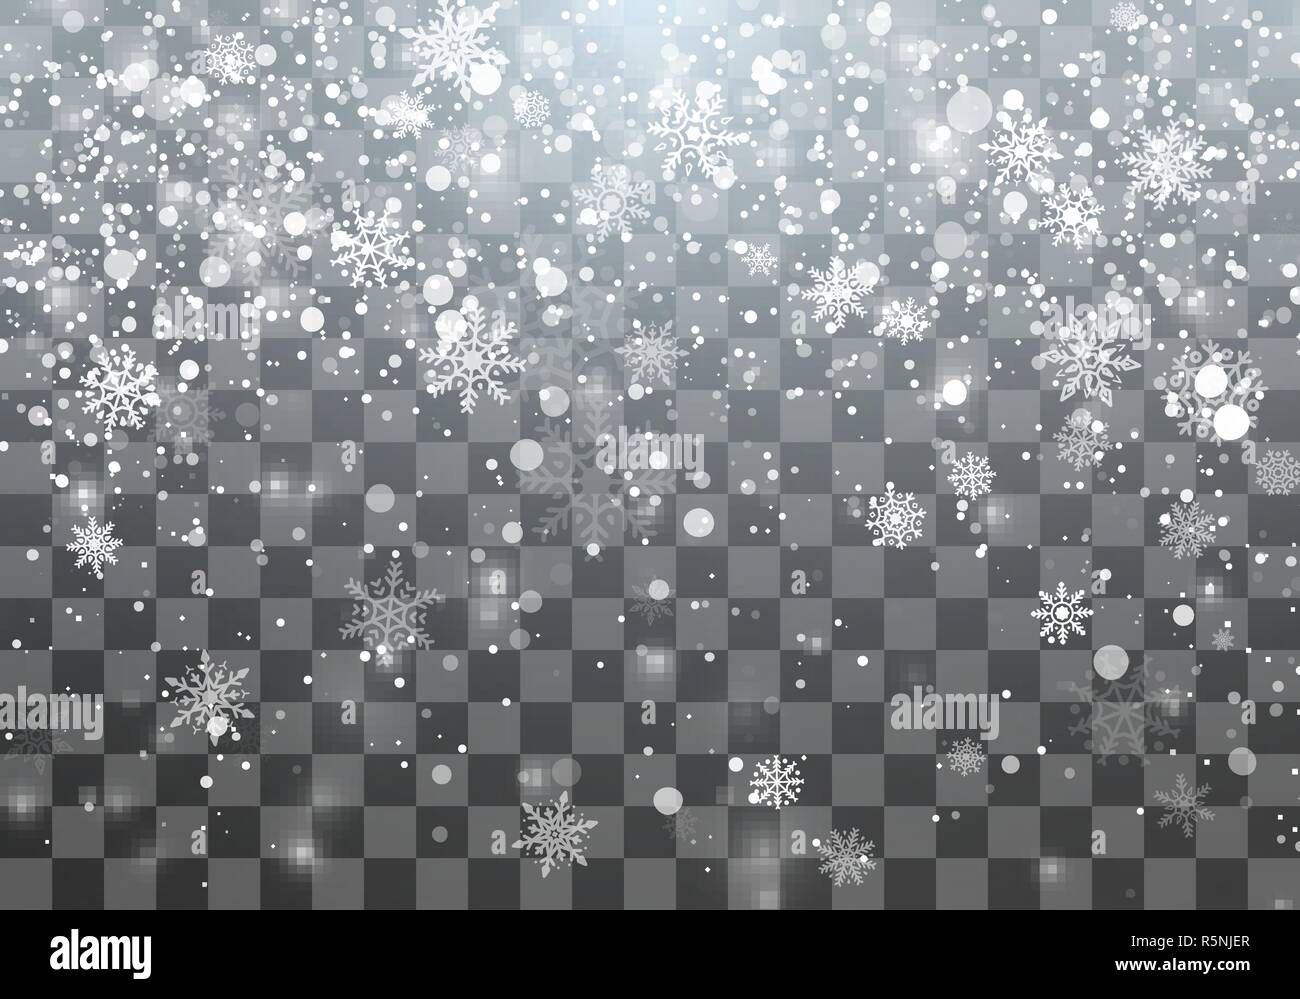 Magic Christmas Schneefall Vorlage. Fallende Schneeflocken auf transparenten Hintergrund. Abstrakte magische Weihnachten Urlaub Hintergrund. Vector Illustration Stock Vektor